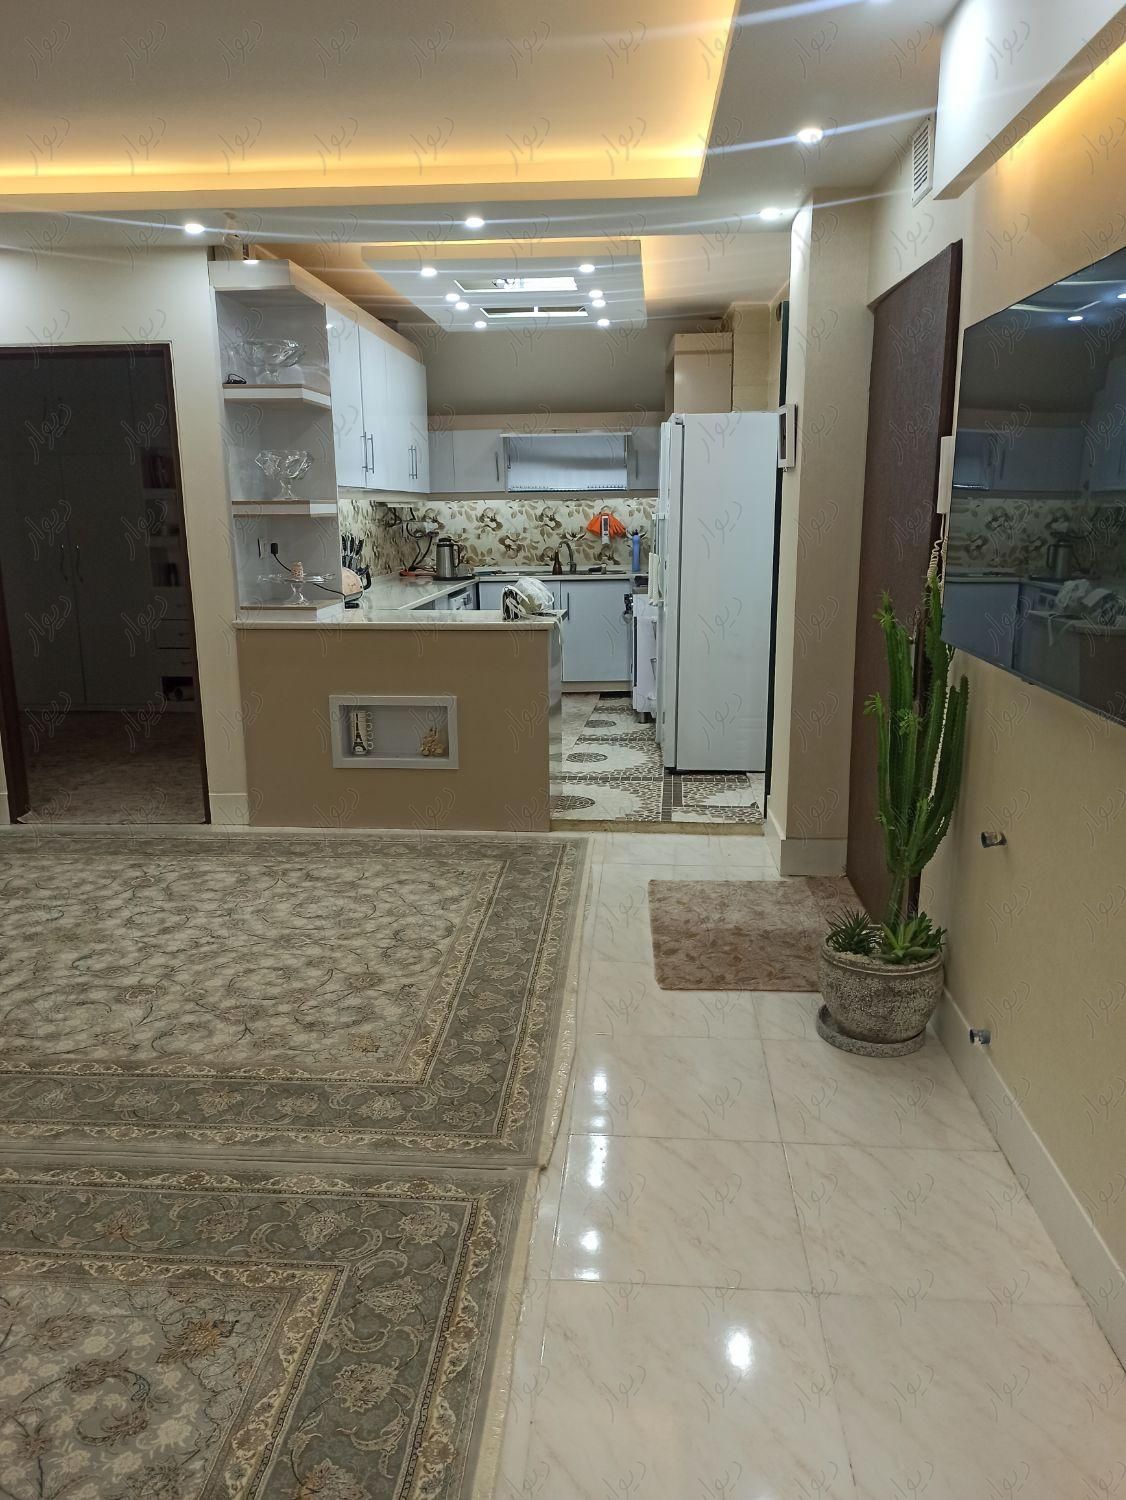 فروش آپارتمان در اصفهان مناسب سرمایه گذاری متراژ ۹۸|فروش آپارتمان|تهران, شاندیز|دیوار